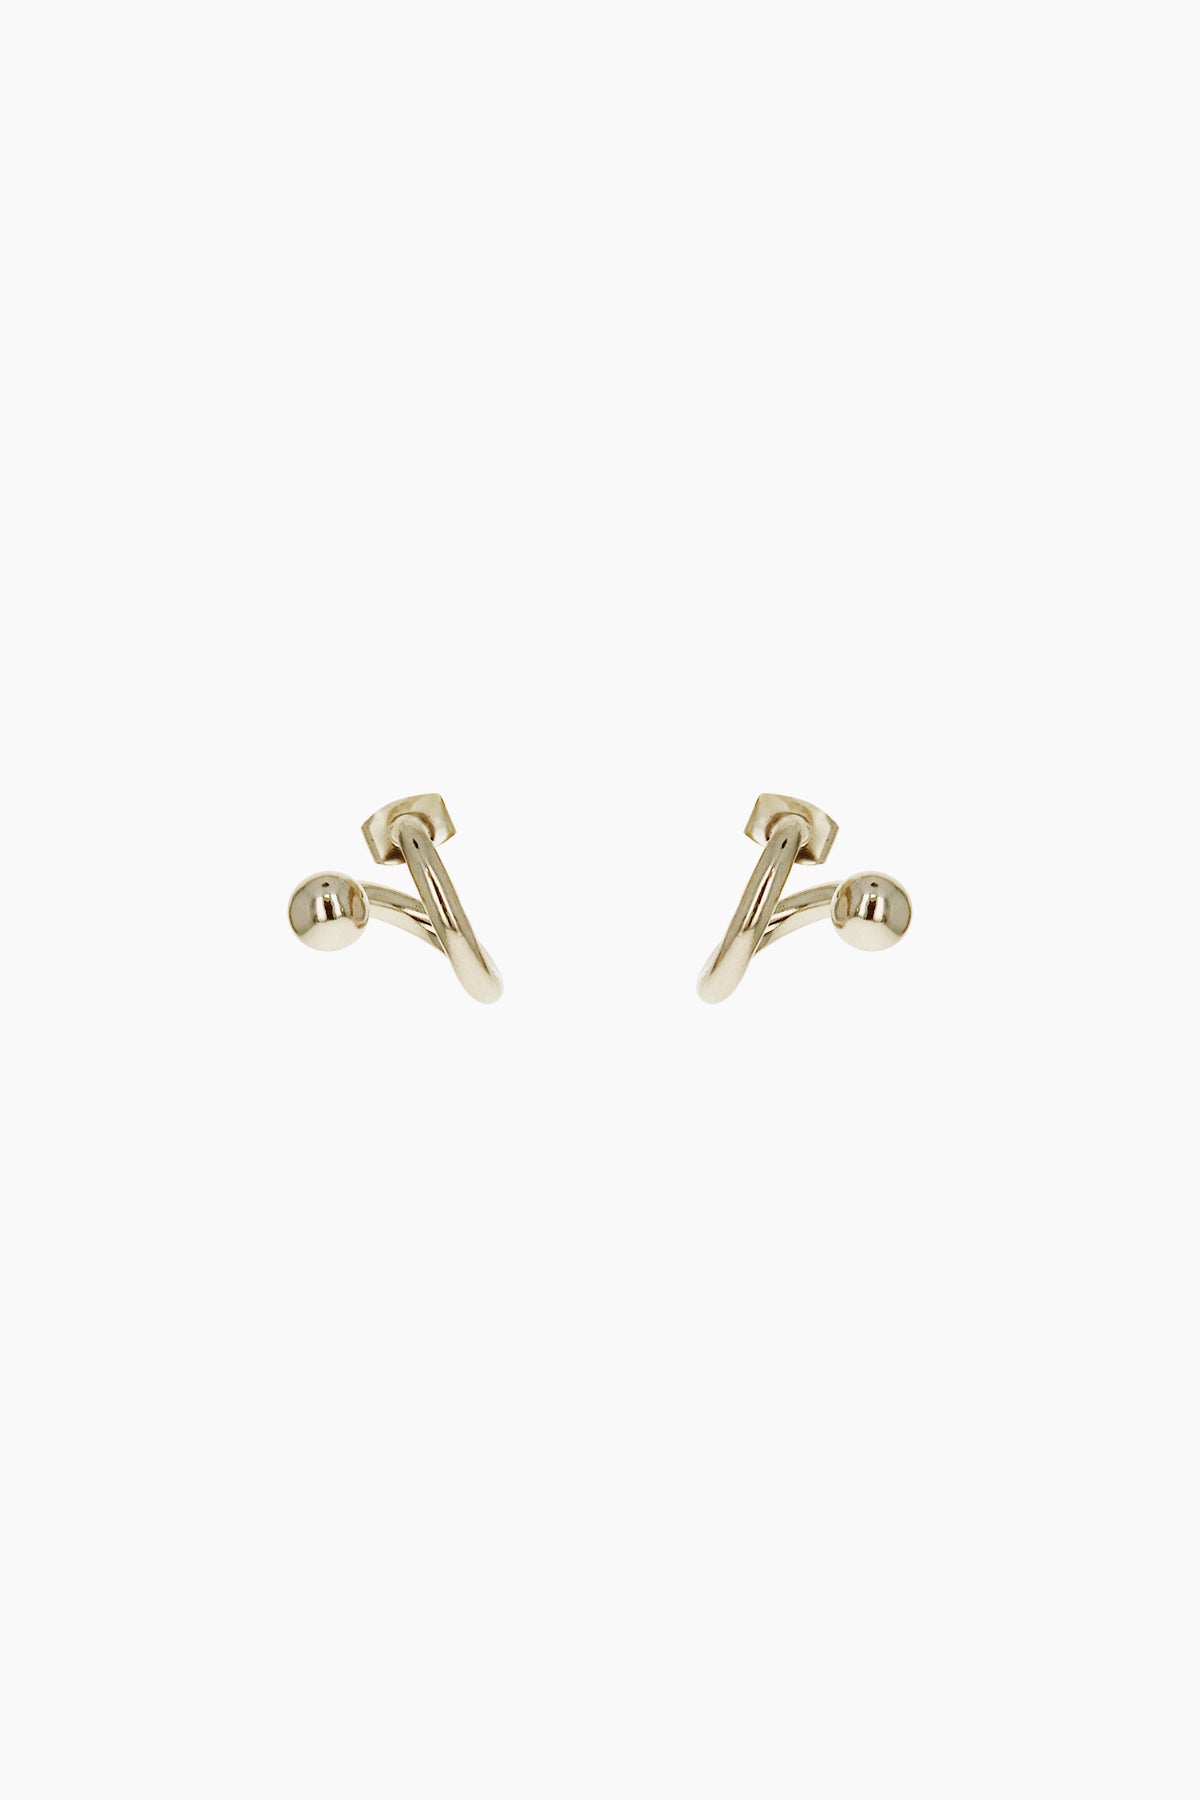 Mel gold earrings